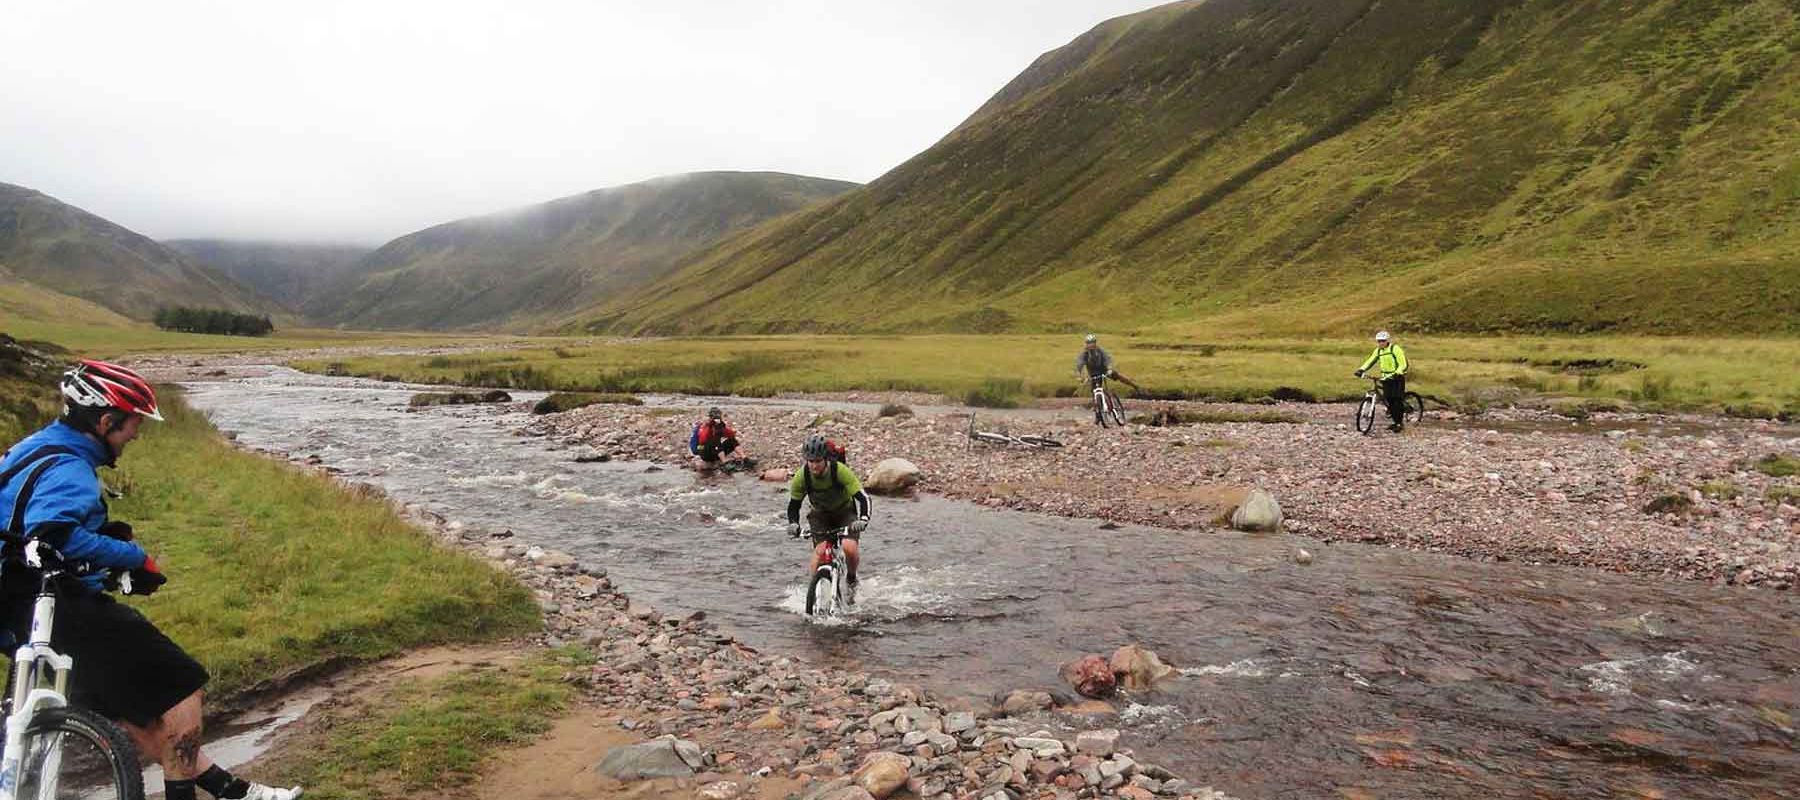 Guided Mountain Biking Through Scotland Lakes